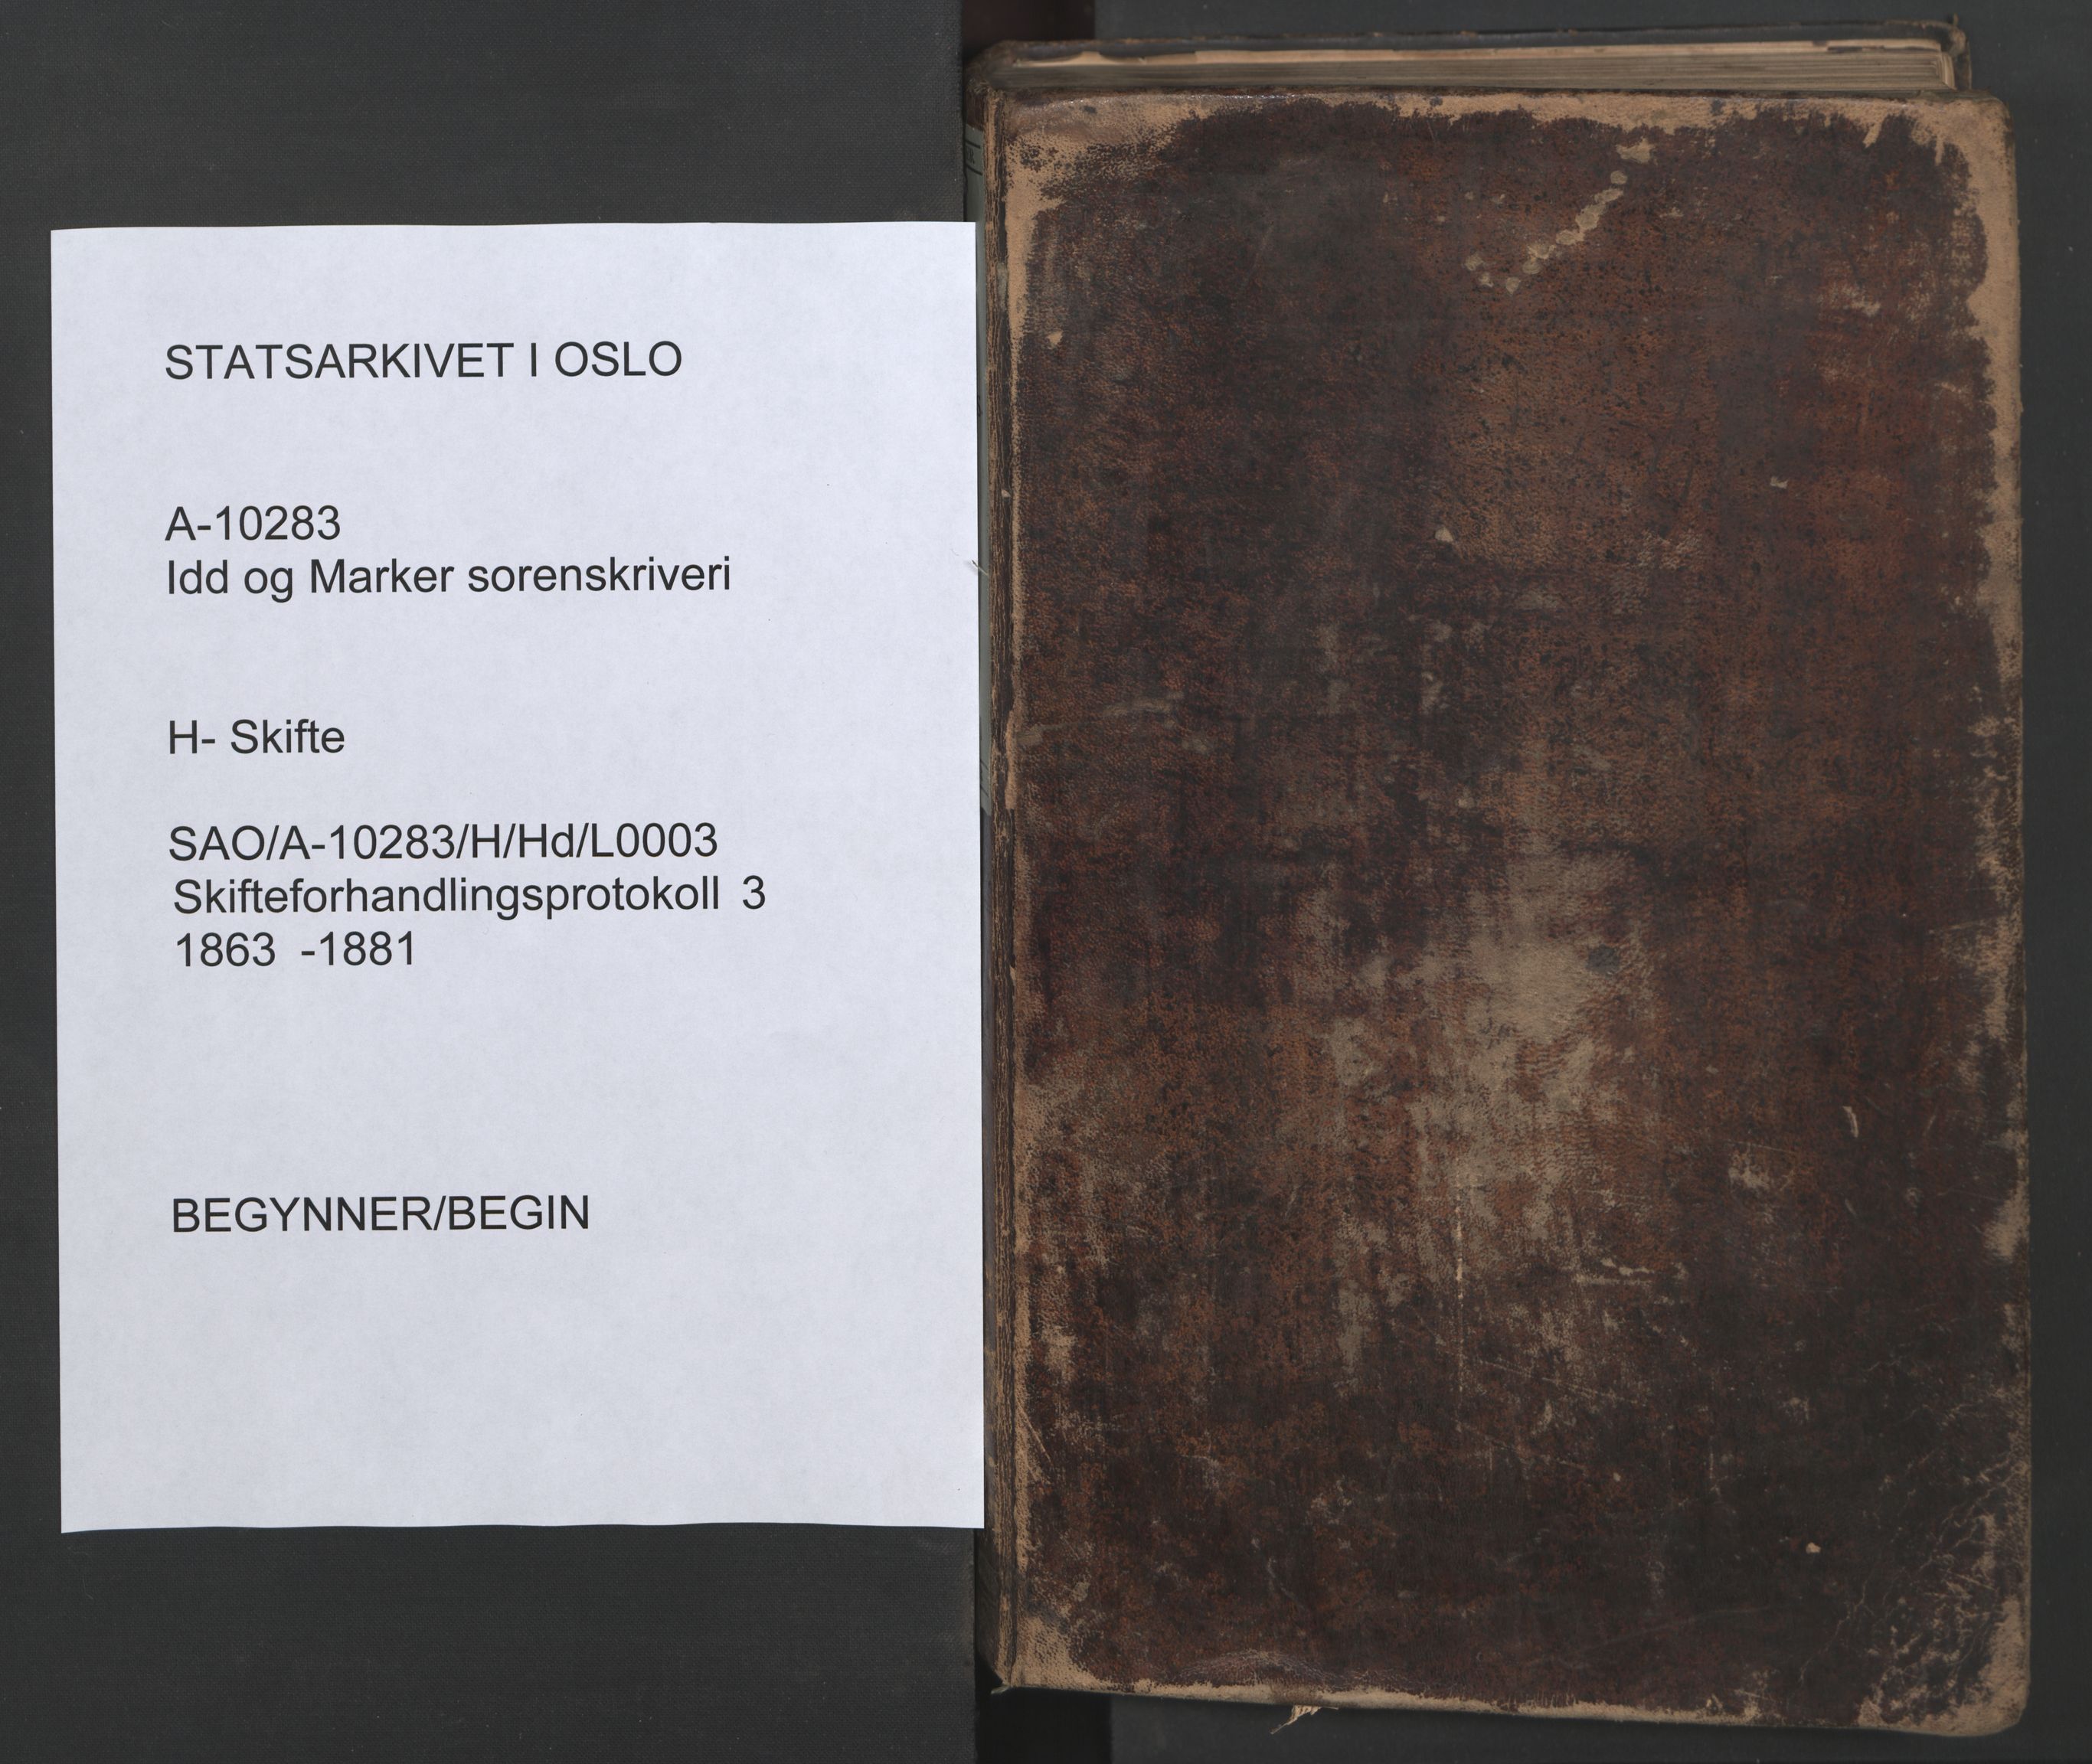 Idd og Marker sorenskriveri, SAO/A-10283/H/Hd/L0003: Skifteforhandlingsprotokoll, 1863-1881